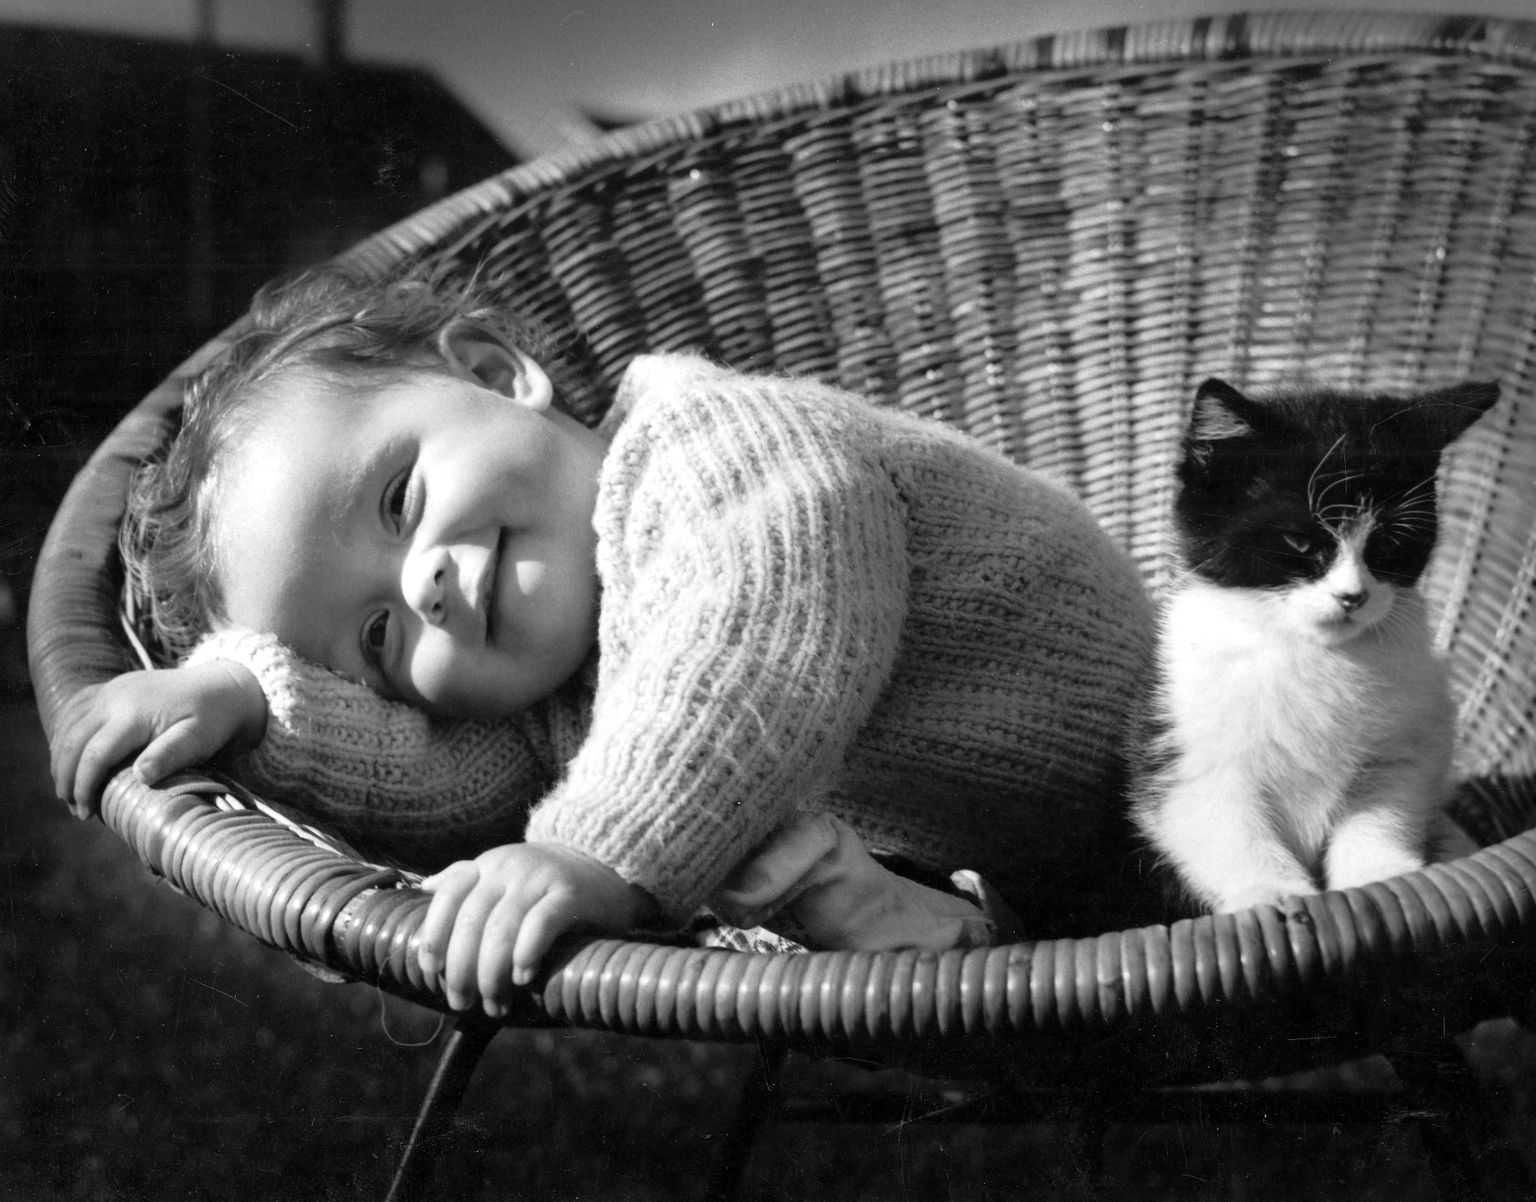 Väiksed lapsed ja kassid võivad olla väga suured sõbrad, kuid neid omapäi jätta ei soovitata.